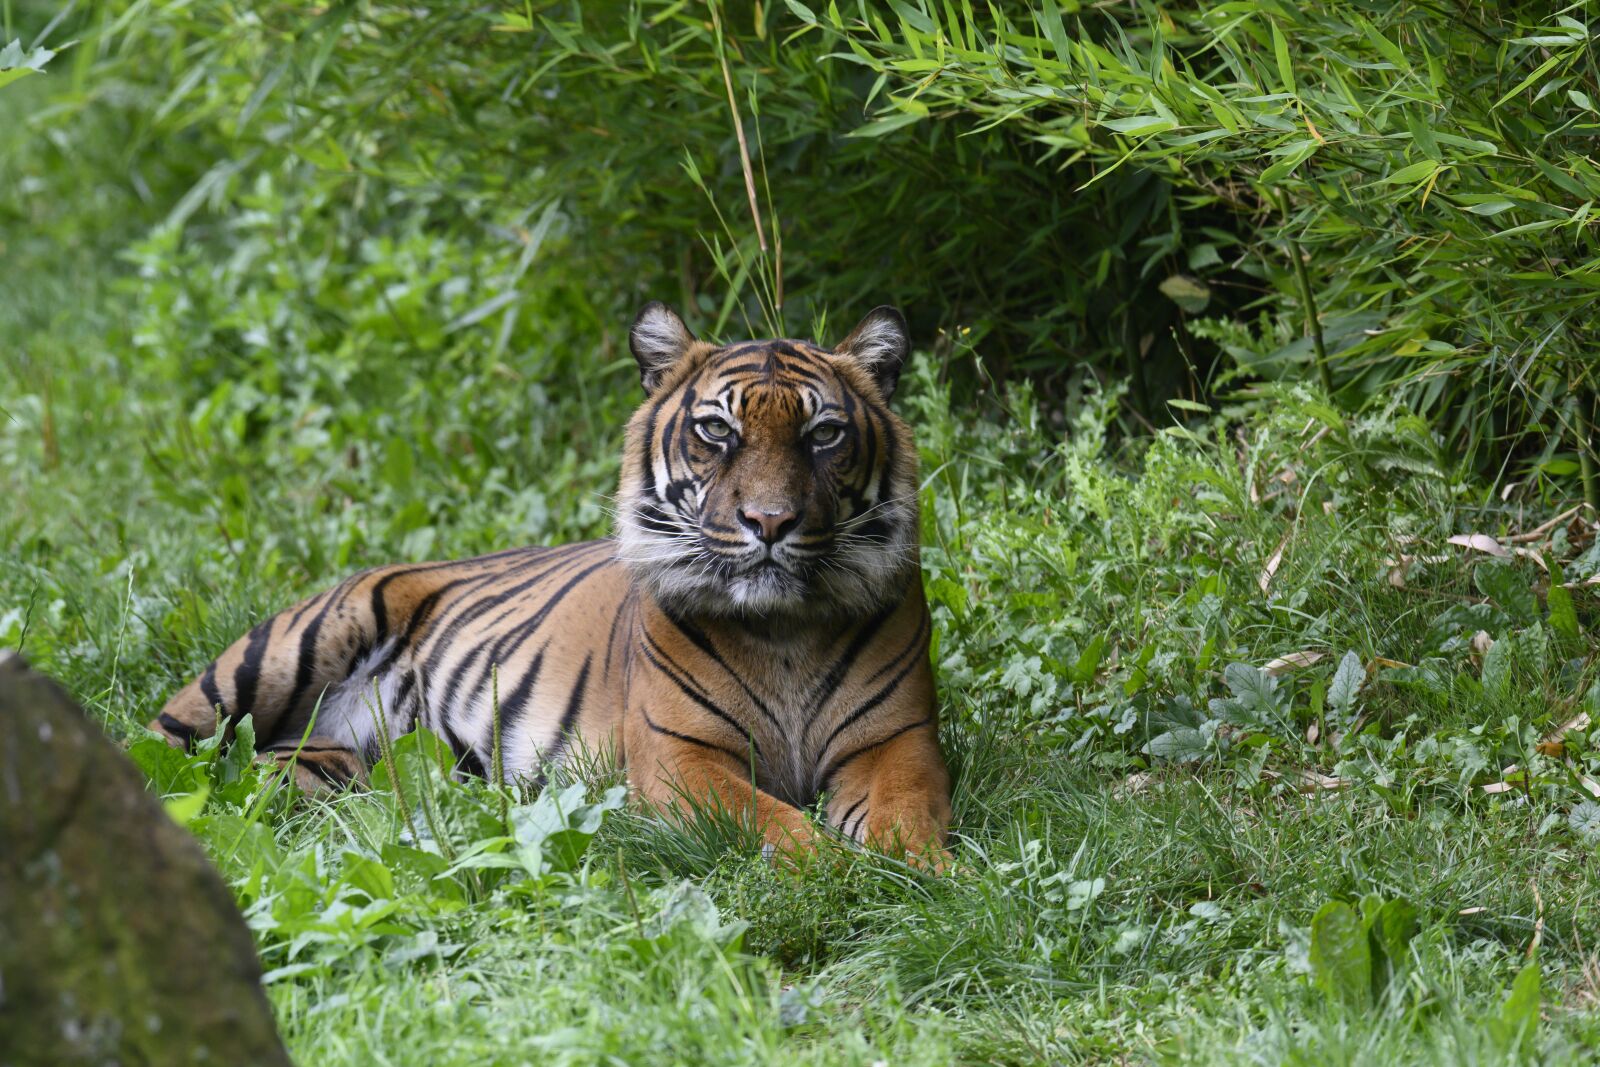 Nikon Z7 sample photo. Tiger, predator, carnivores photography